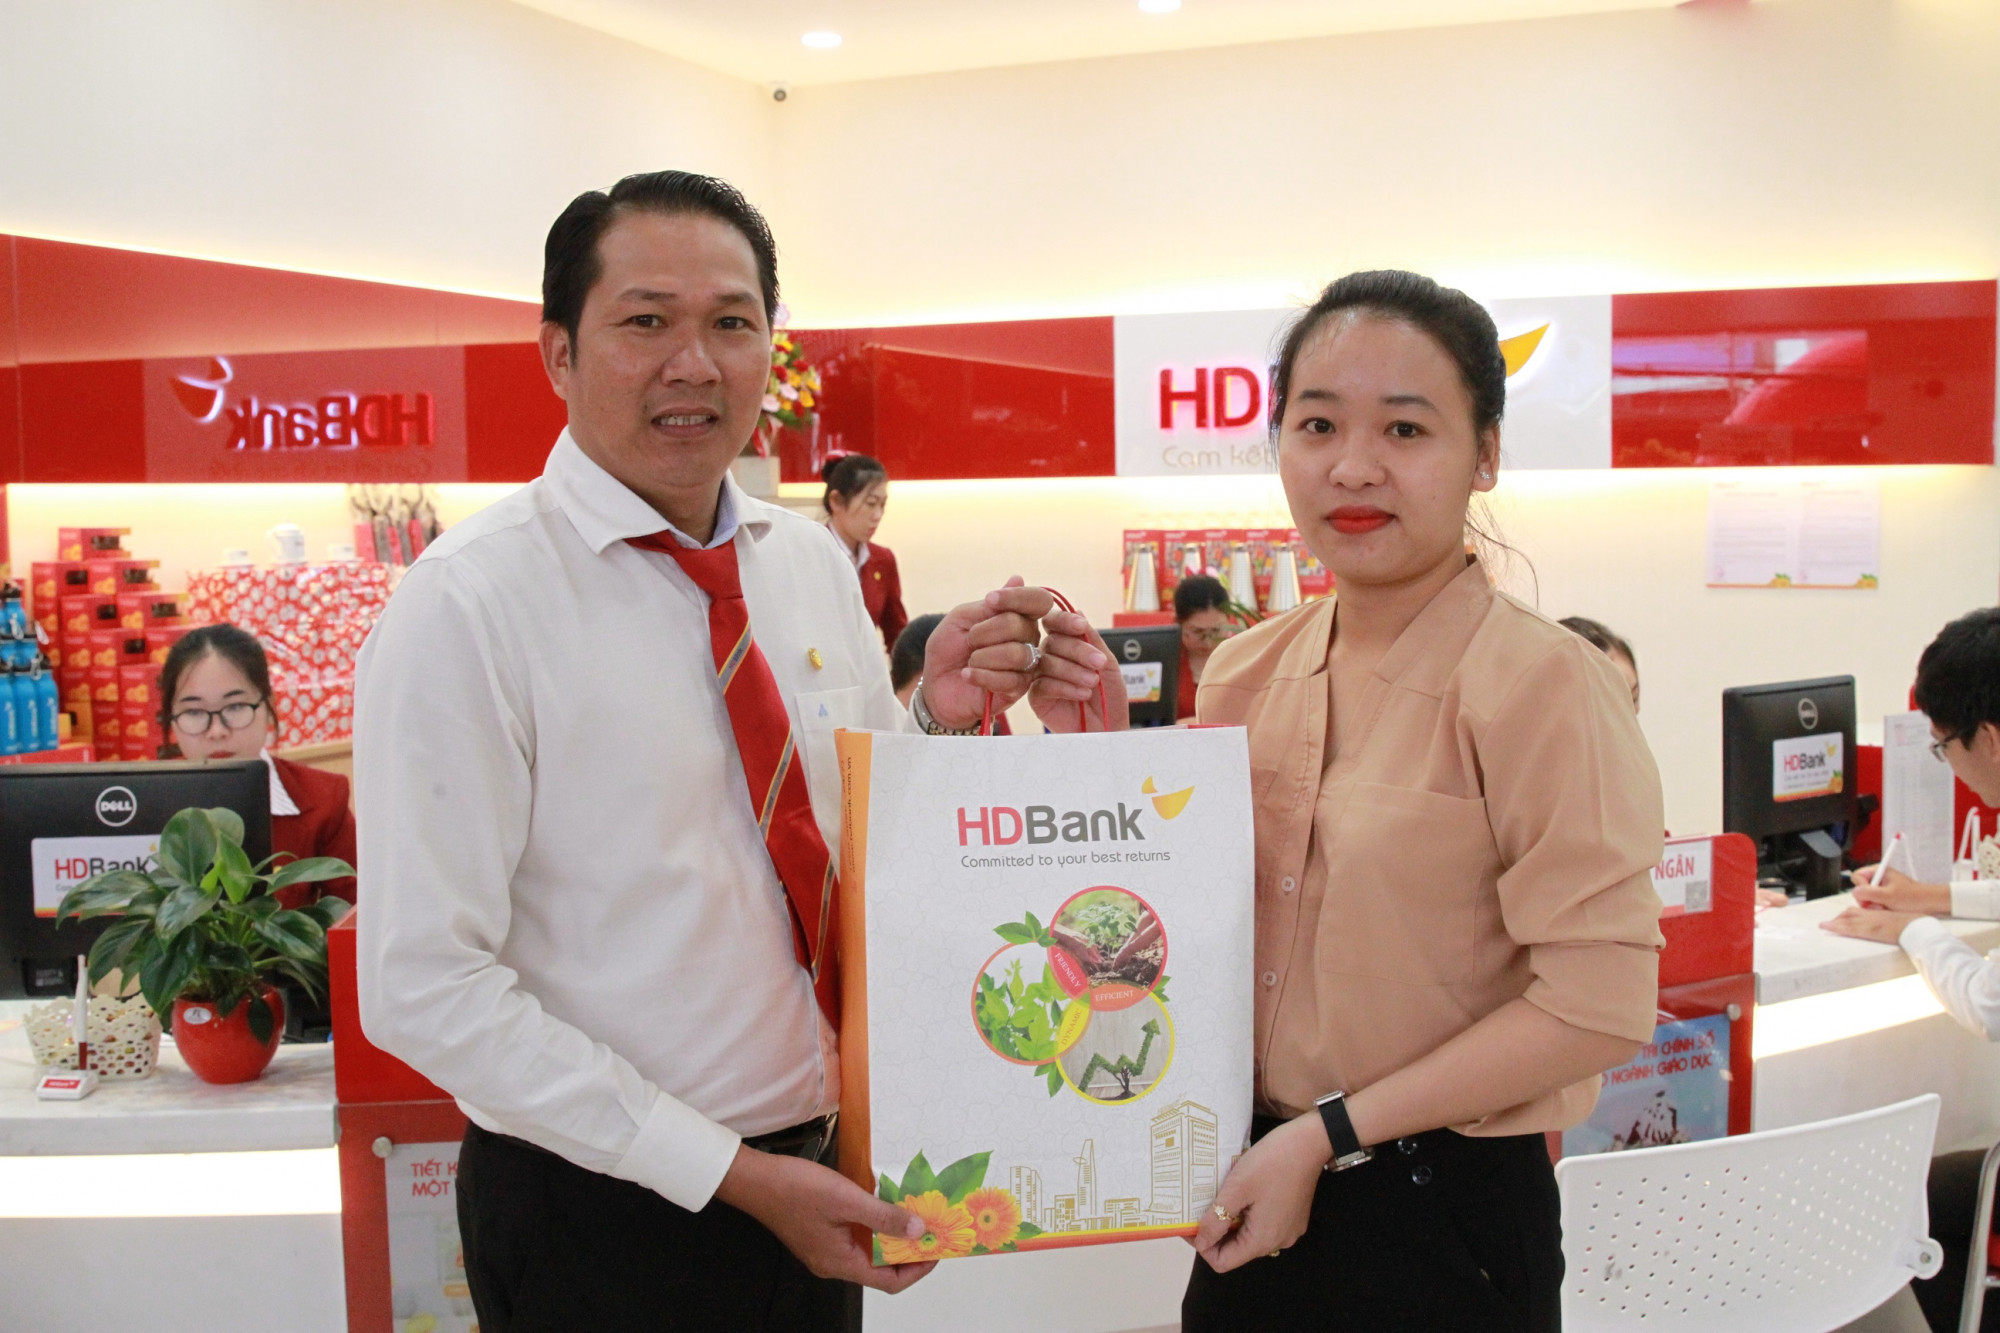 Nhân dịp khai trương trụ sở mới, HDBank Minh Diệu dành tặng những khách hàng địa phương tới giao dịch nhiều phần quà hấp dẫn, thiết thực - Ảnh: HDBank